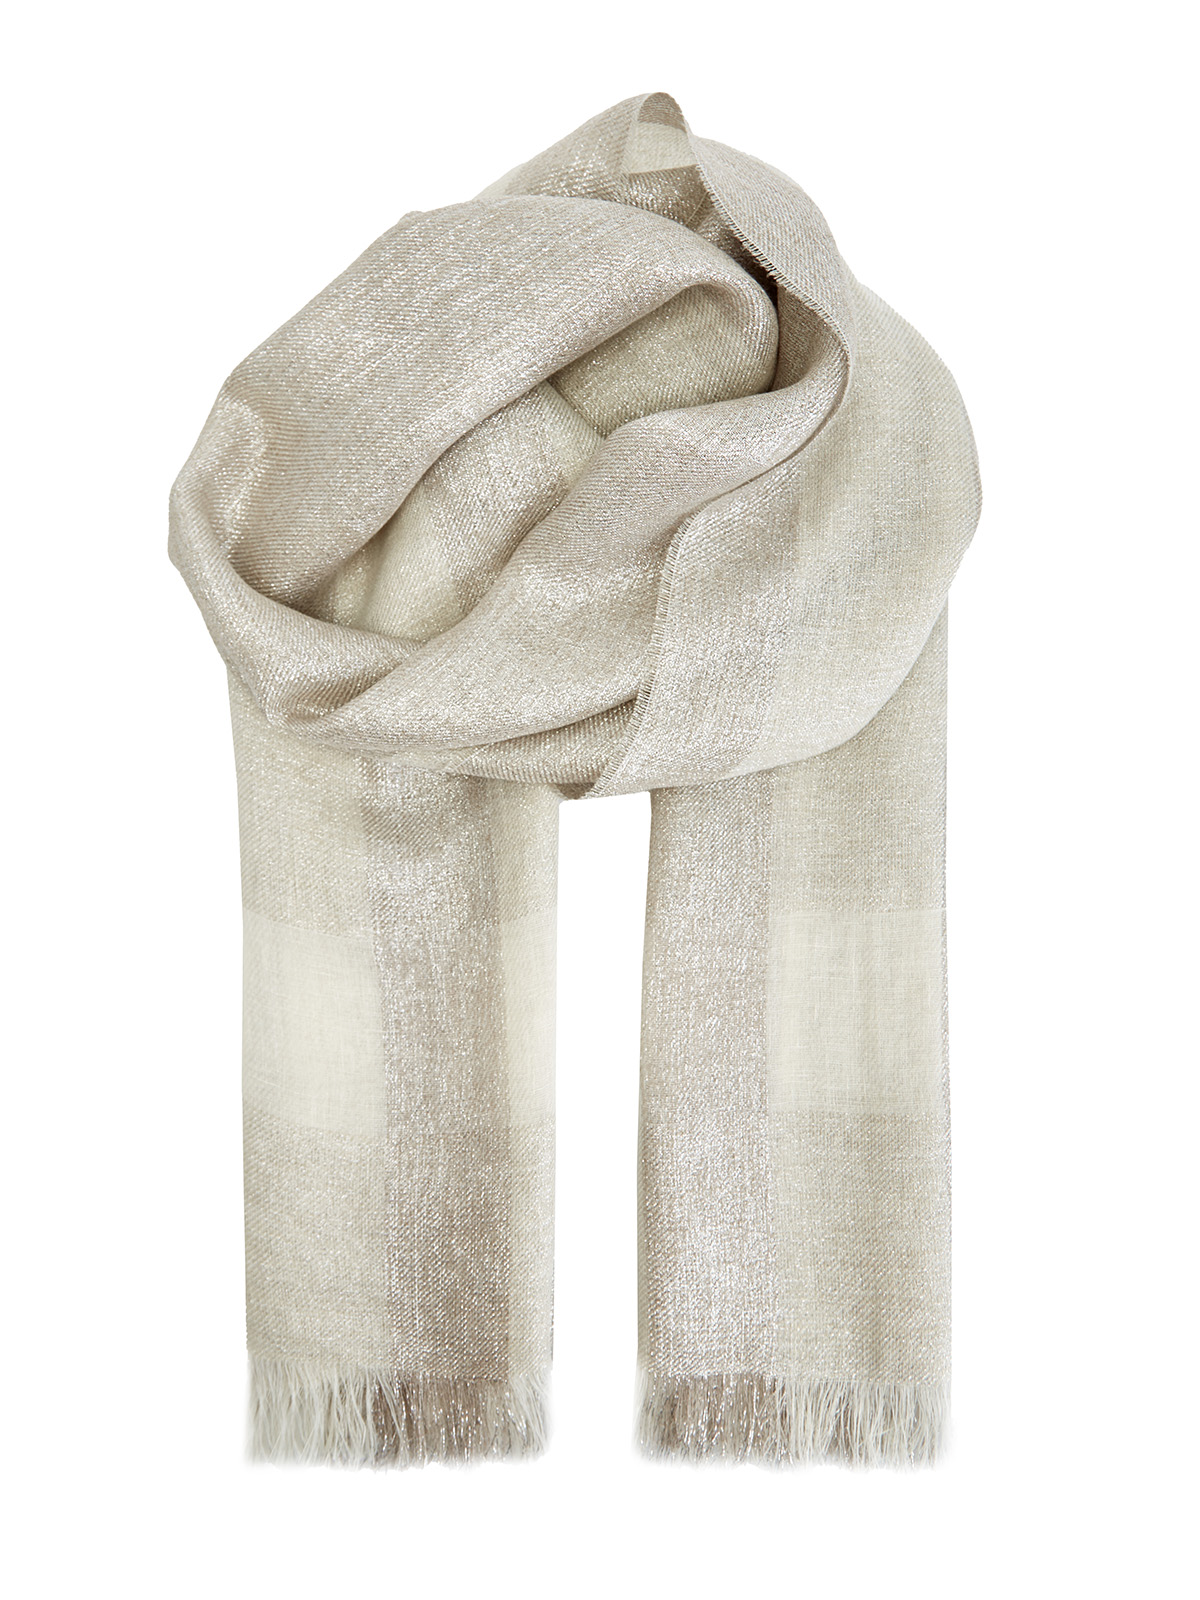 Легкий шарф с мерцающей нитью ламе и бахромой FABIANA FILIPPI, цвет бежевый, размер 36.5;37;37.5;38;40;39